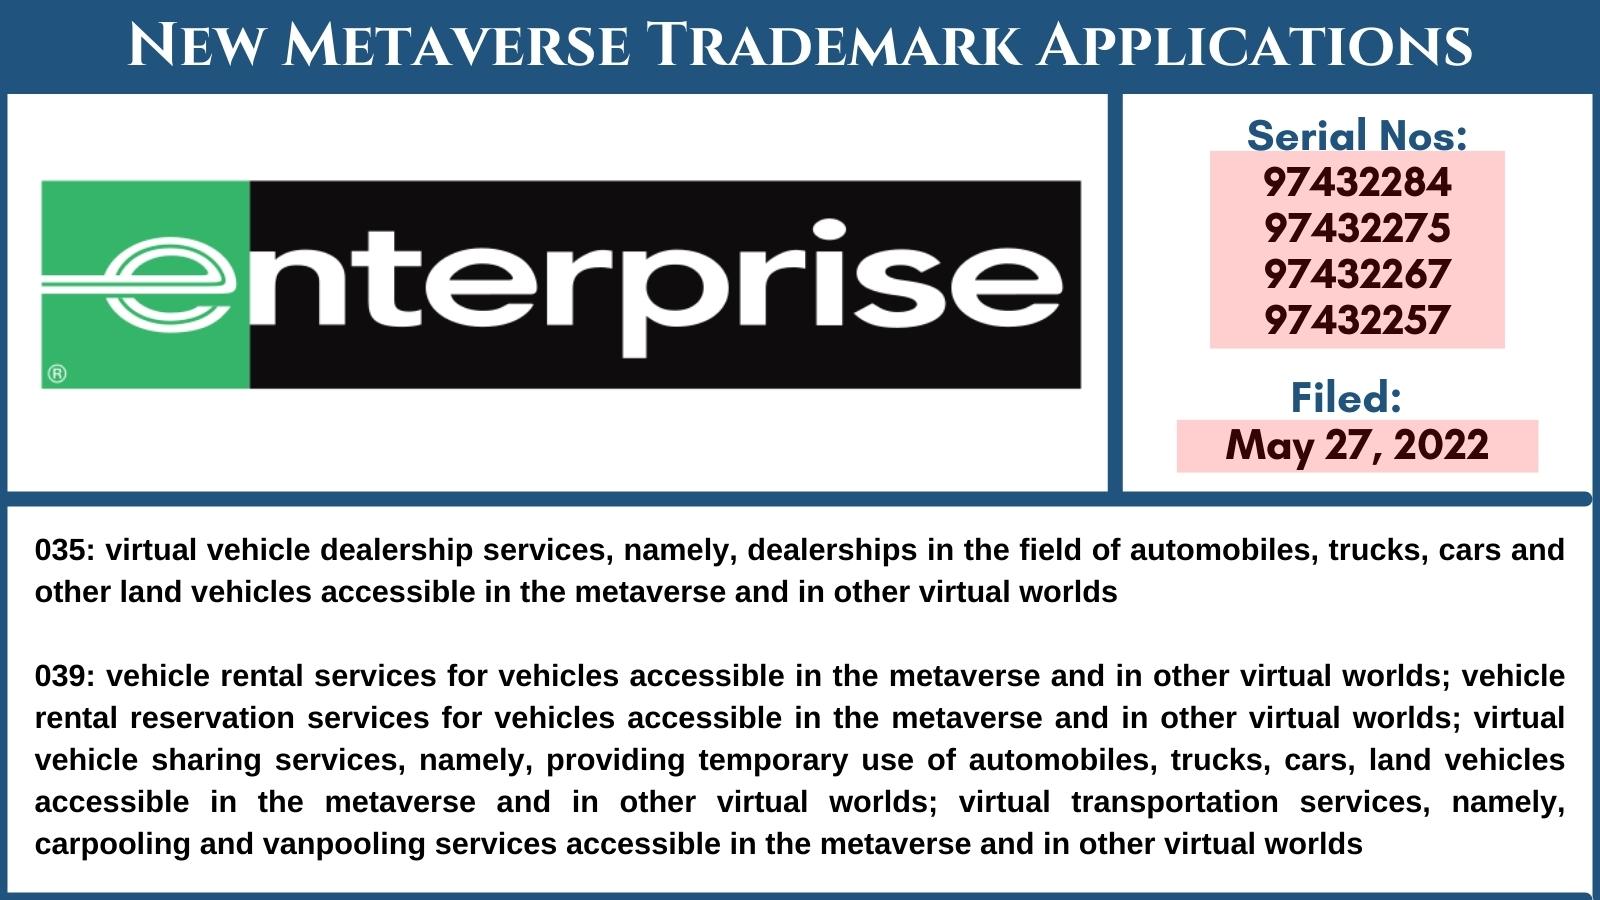 国际租车巨头Enterprise已申请元宇宙相关商标